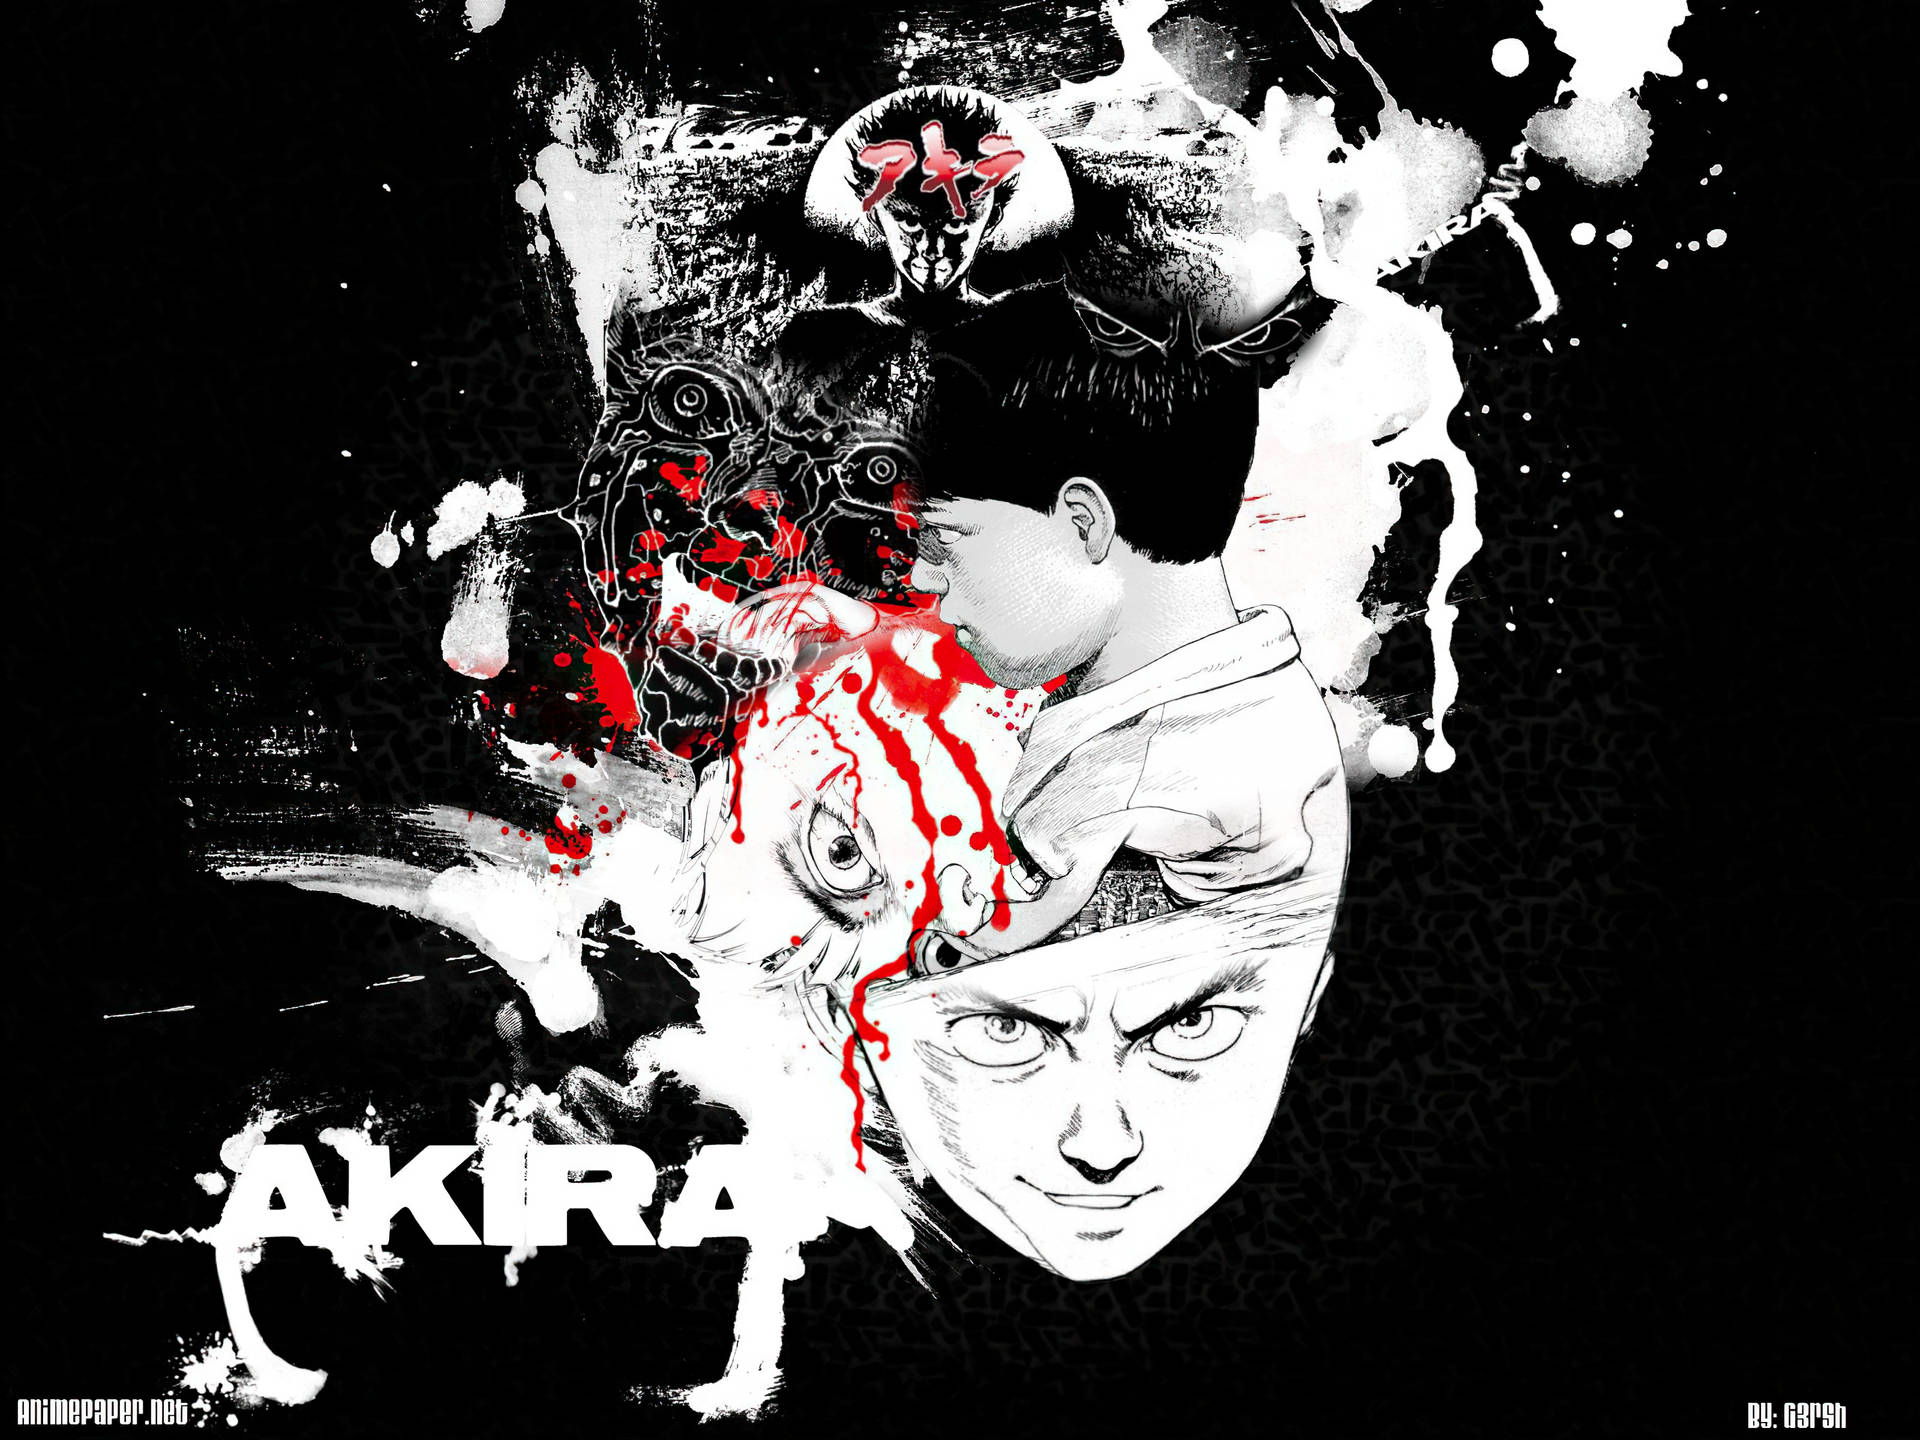 Akira 3200X2400 Wallpaper and Background Image